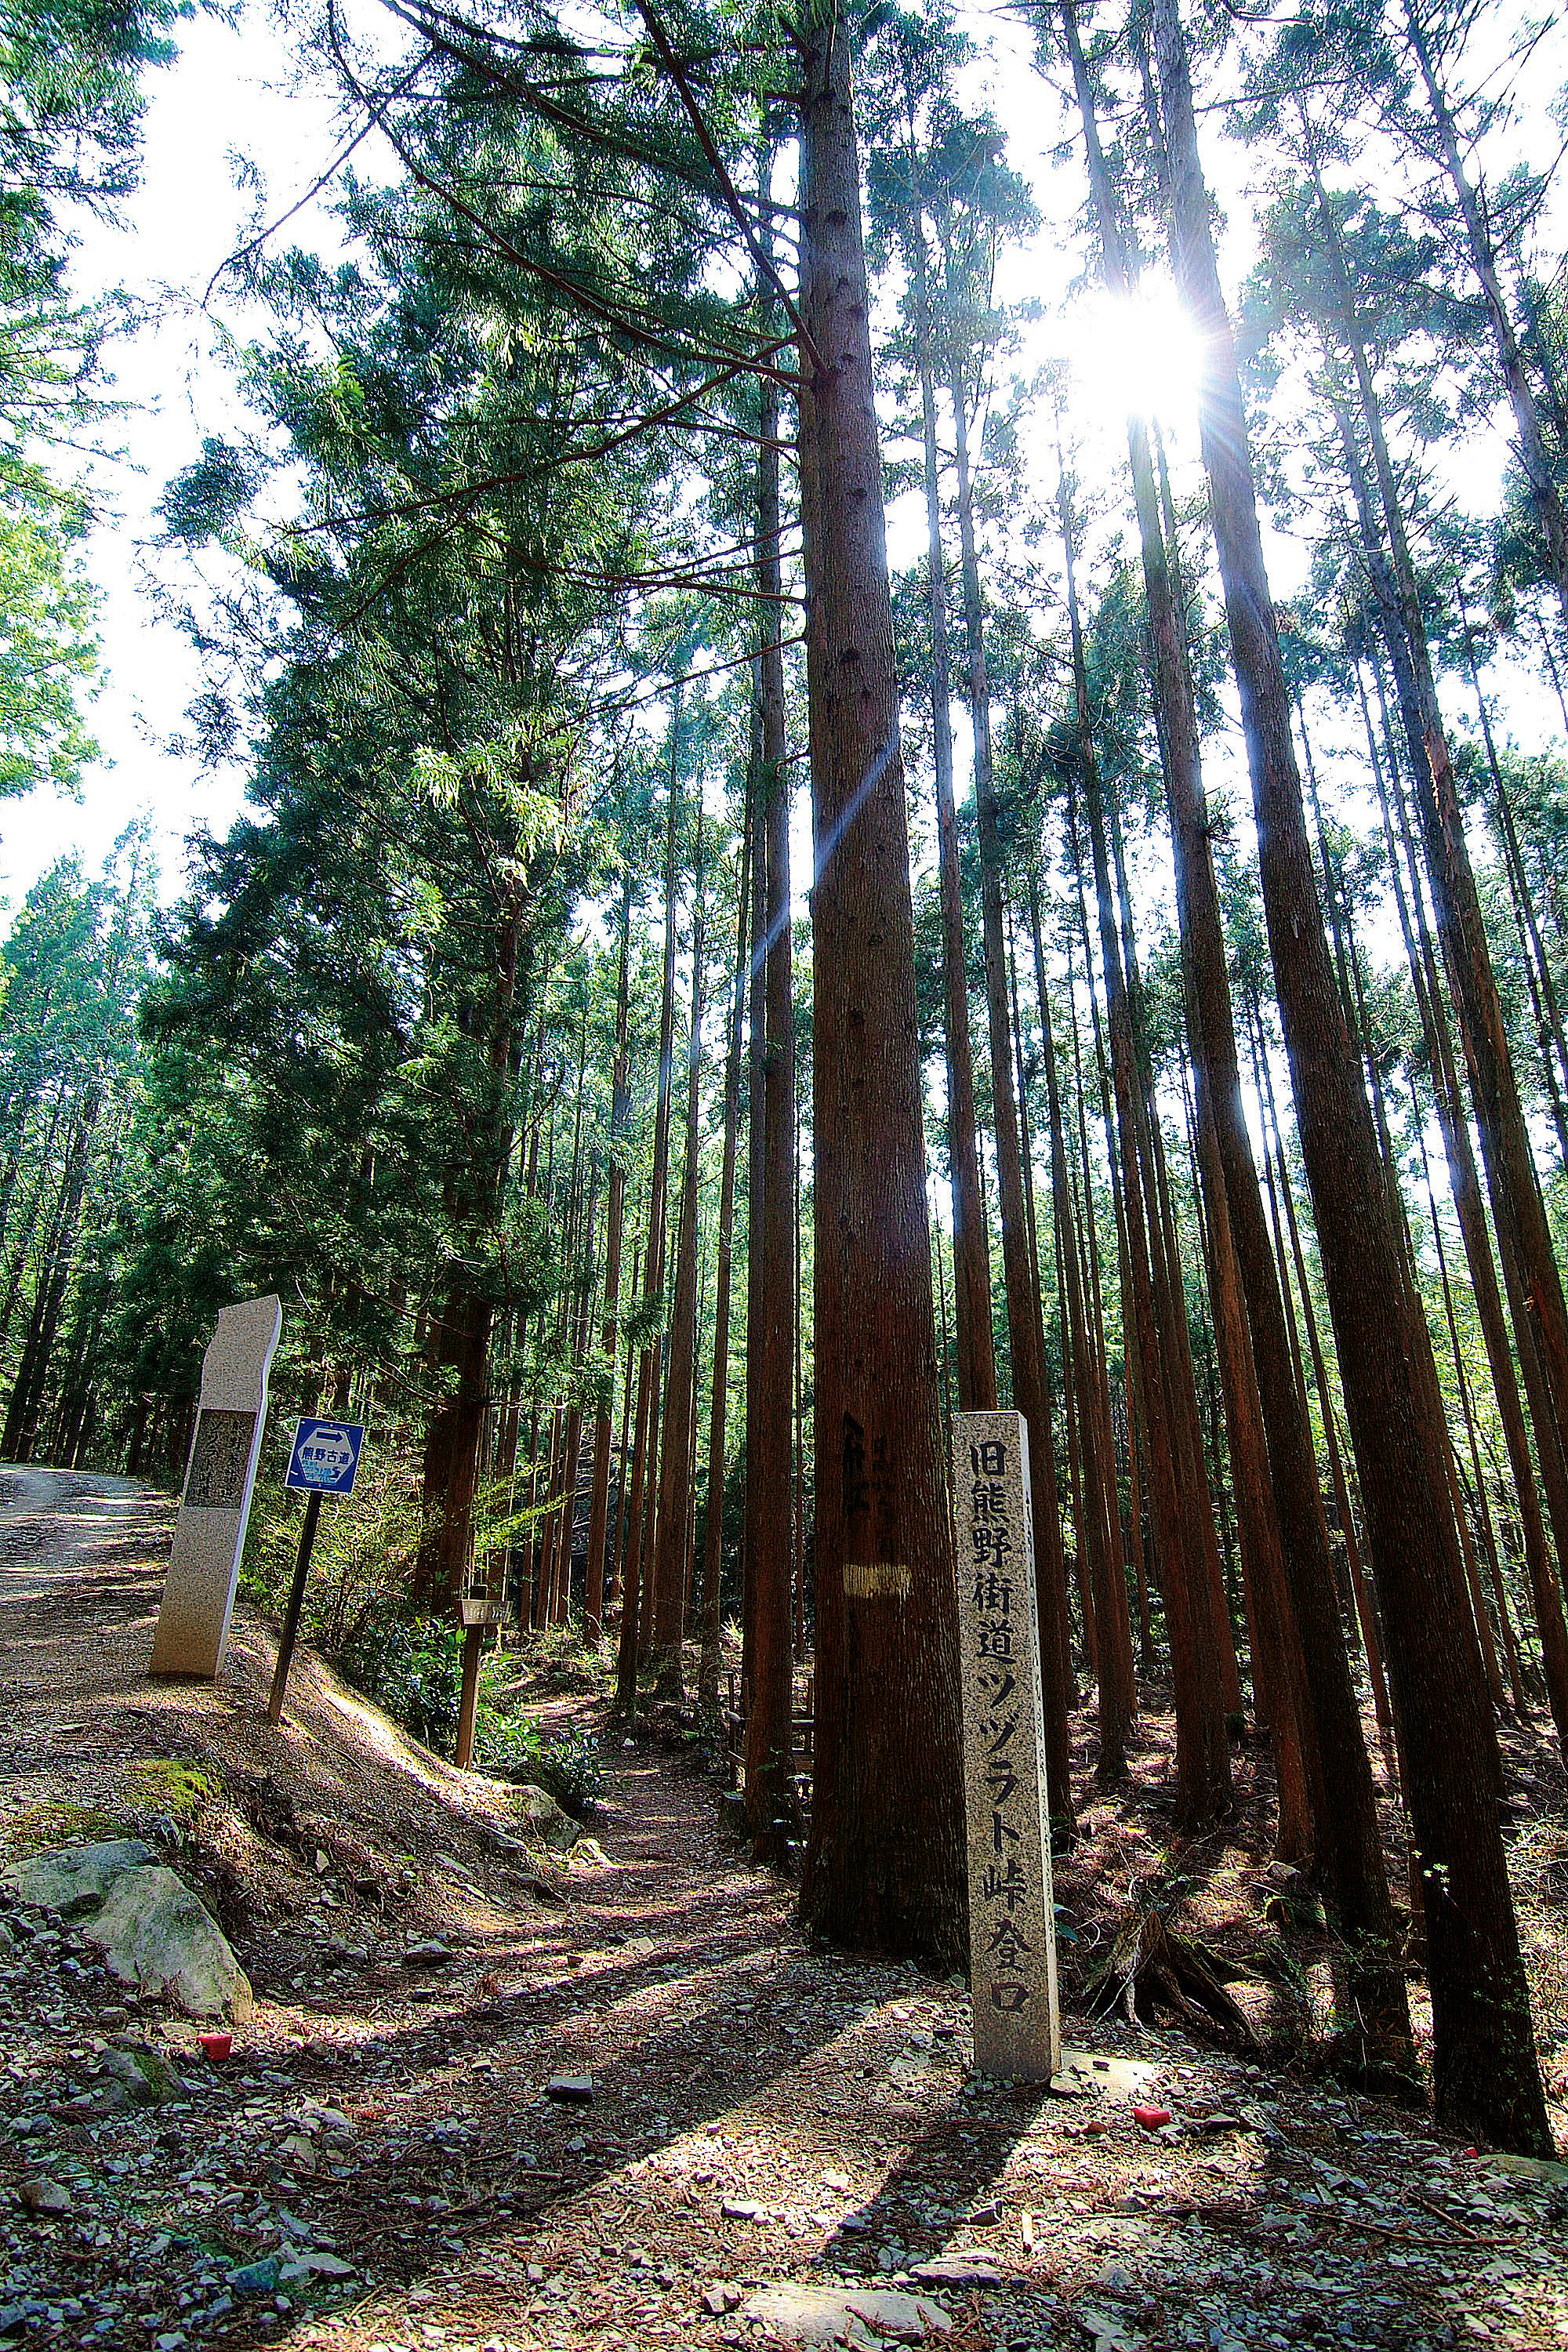 世界遺産熊野古道ツヅラト峠